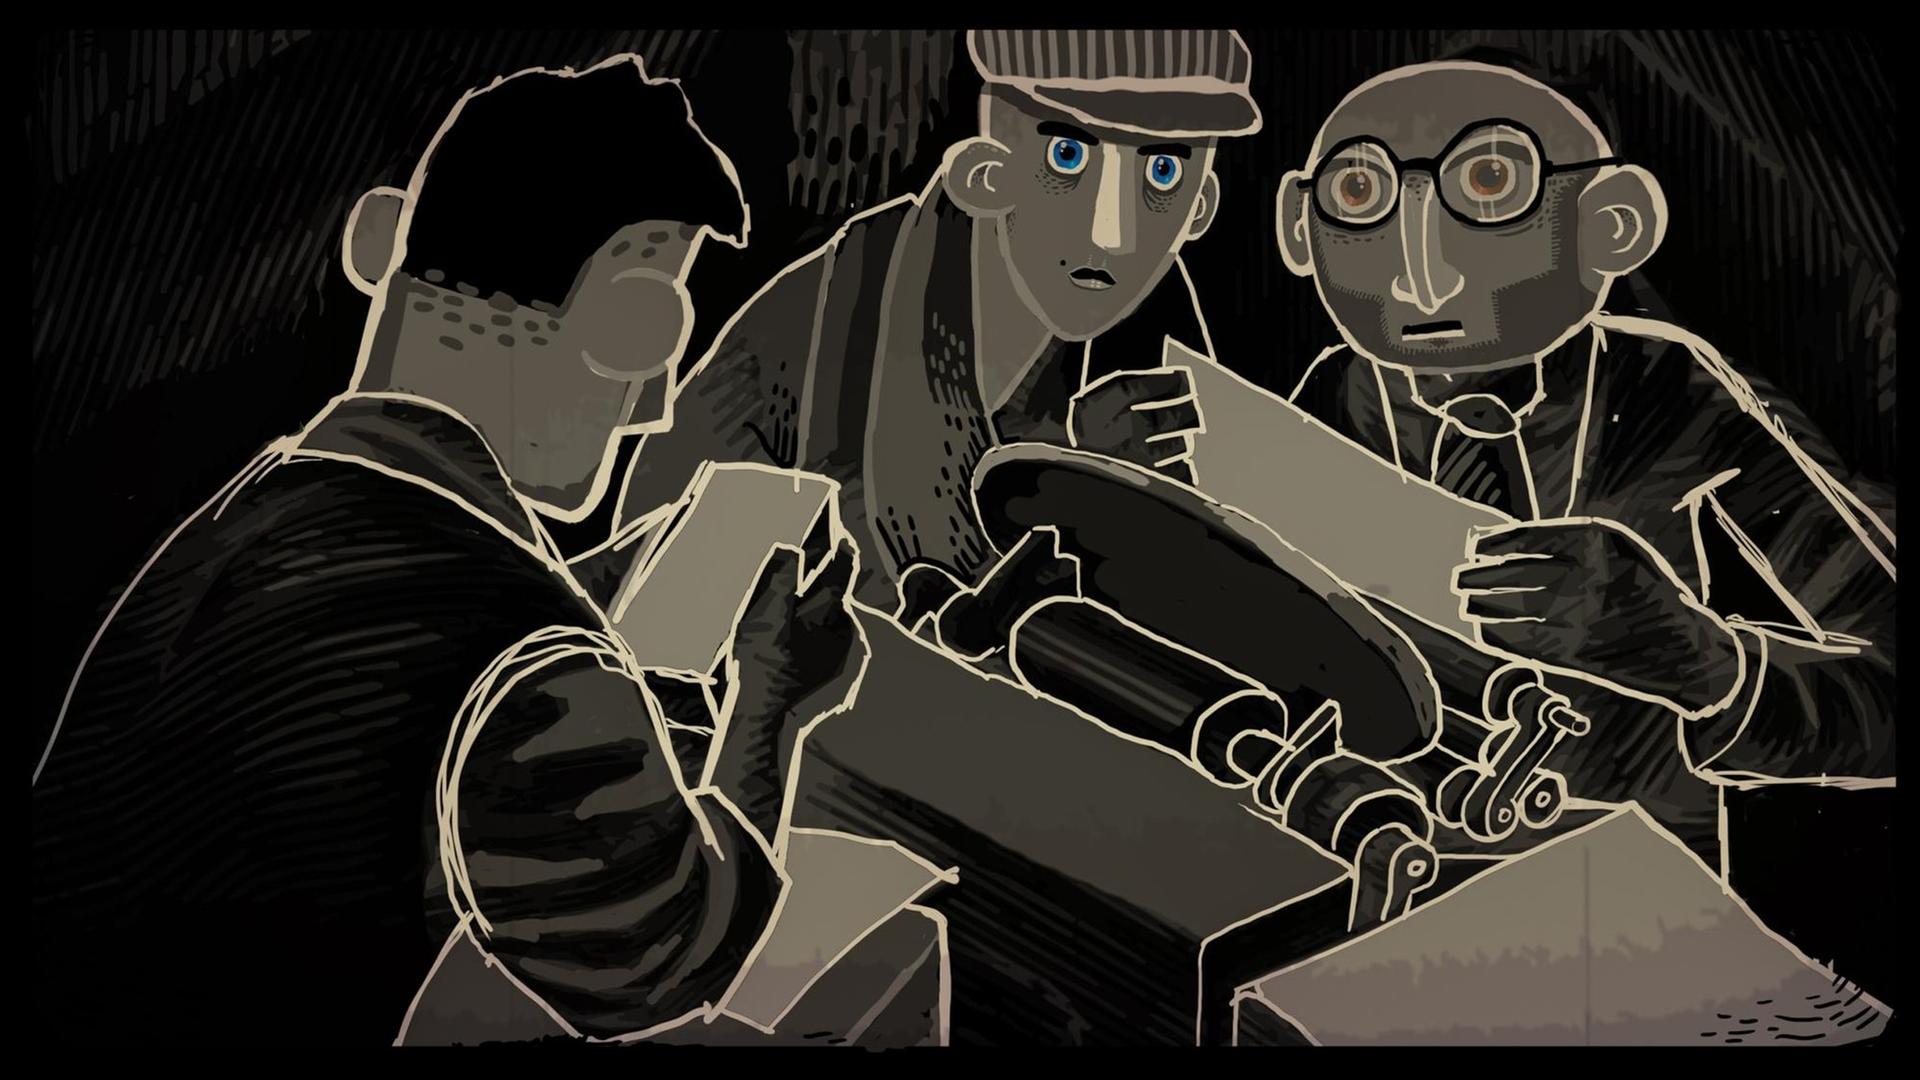 Szene aus dem Spiel "Through the Darkest of Times": Drei Widerstandskämpfer sitzen kospirativ zusammen in einer Untergrunddruckerei, zwei von ihnen starren den Betrachter durchdringend an.